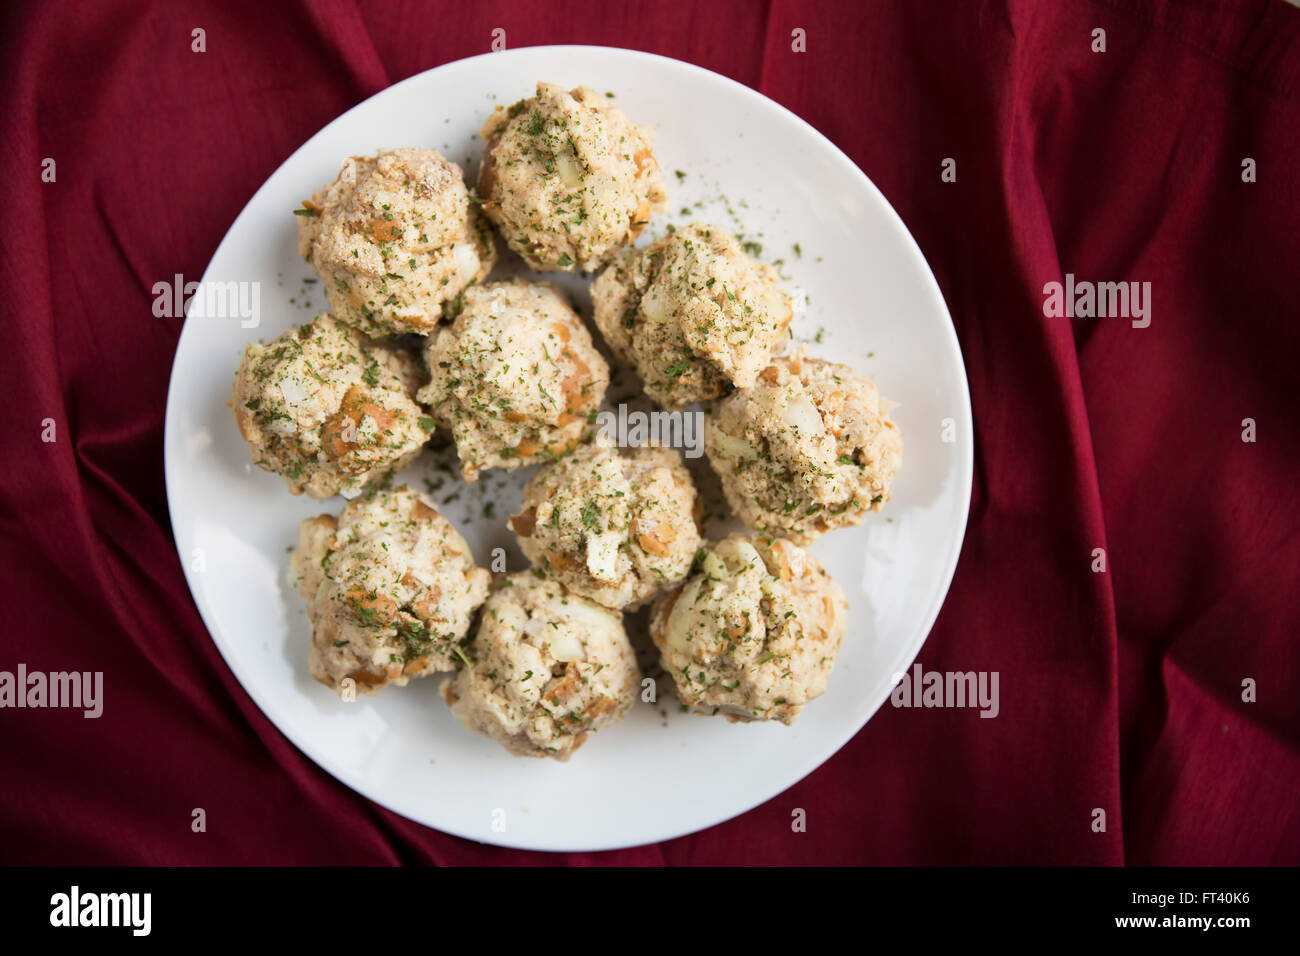 Bavarian bread dumplings, semmelknoedel, ready to be cooked. Stock Photo